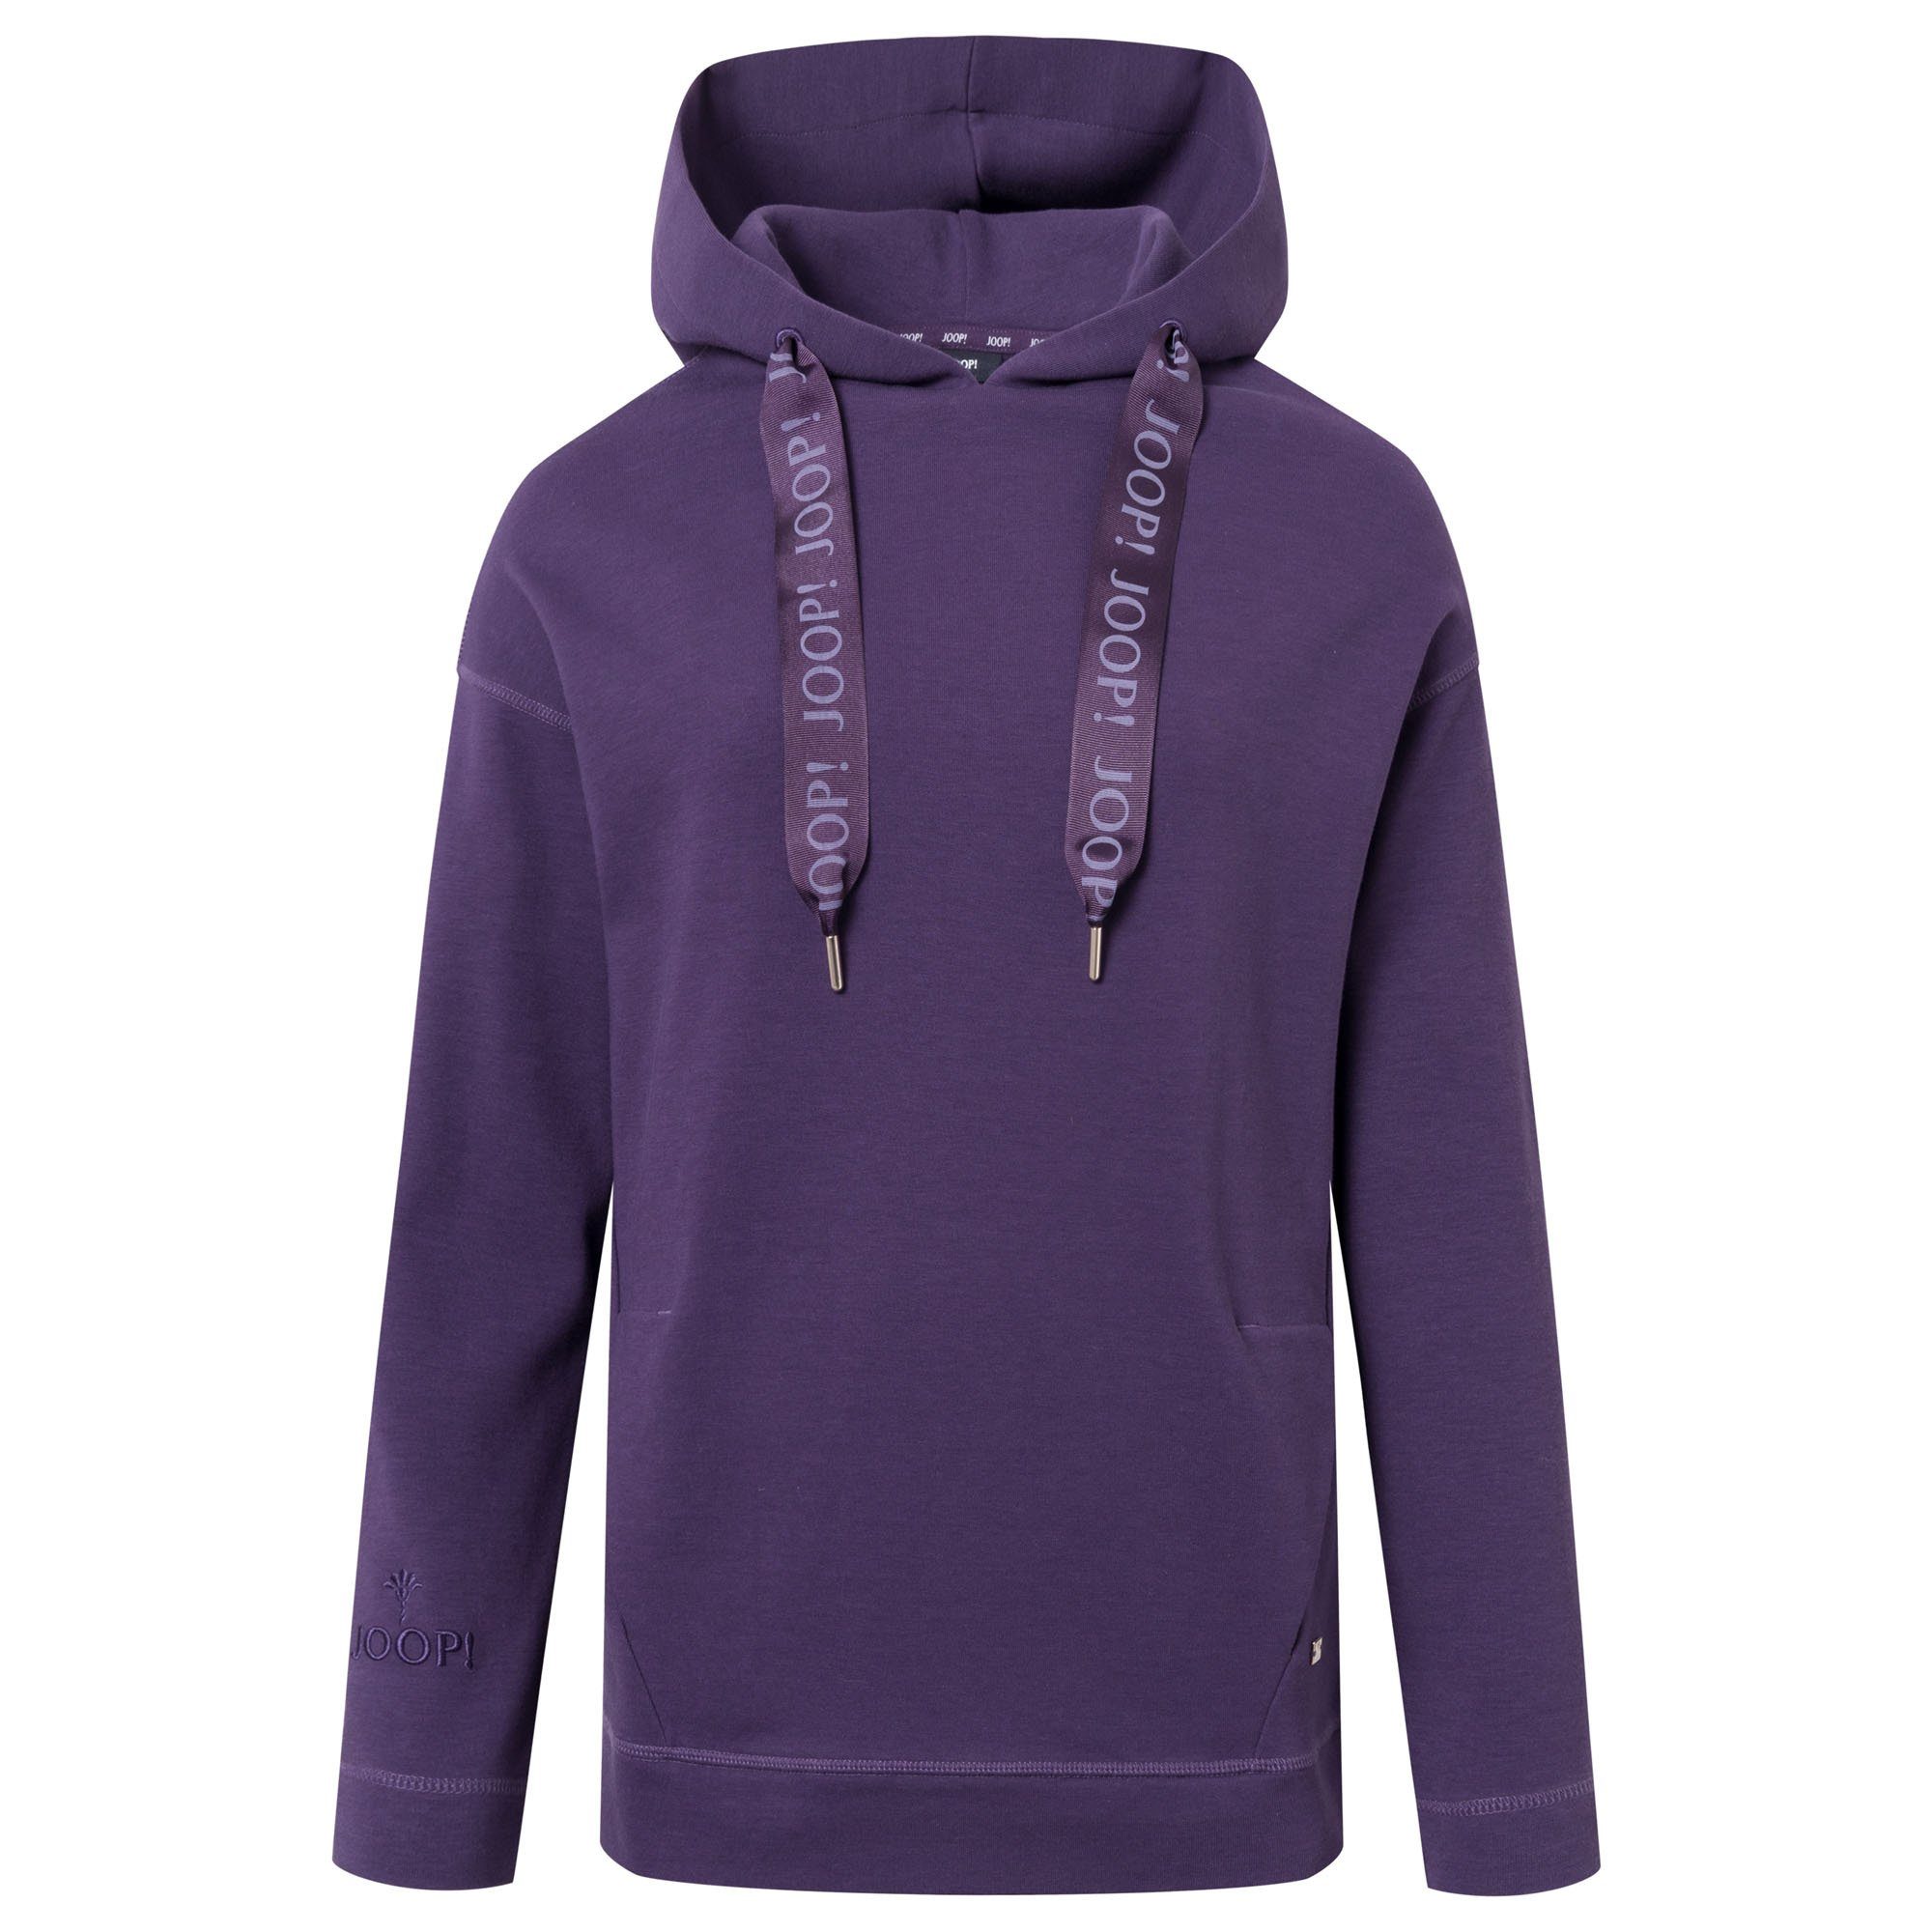 Joop! Sweater Damen Hoodie - Sweatshirt, Sweater, Loungewear Lila (Dark Purple)